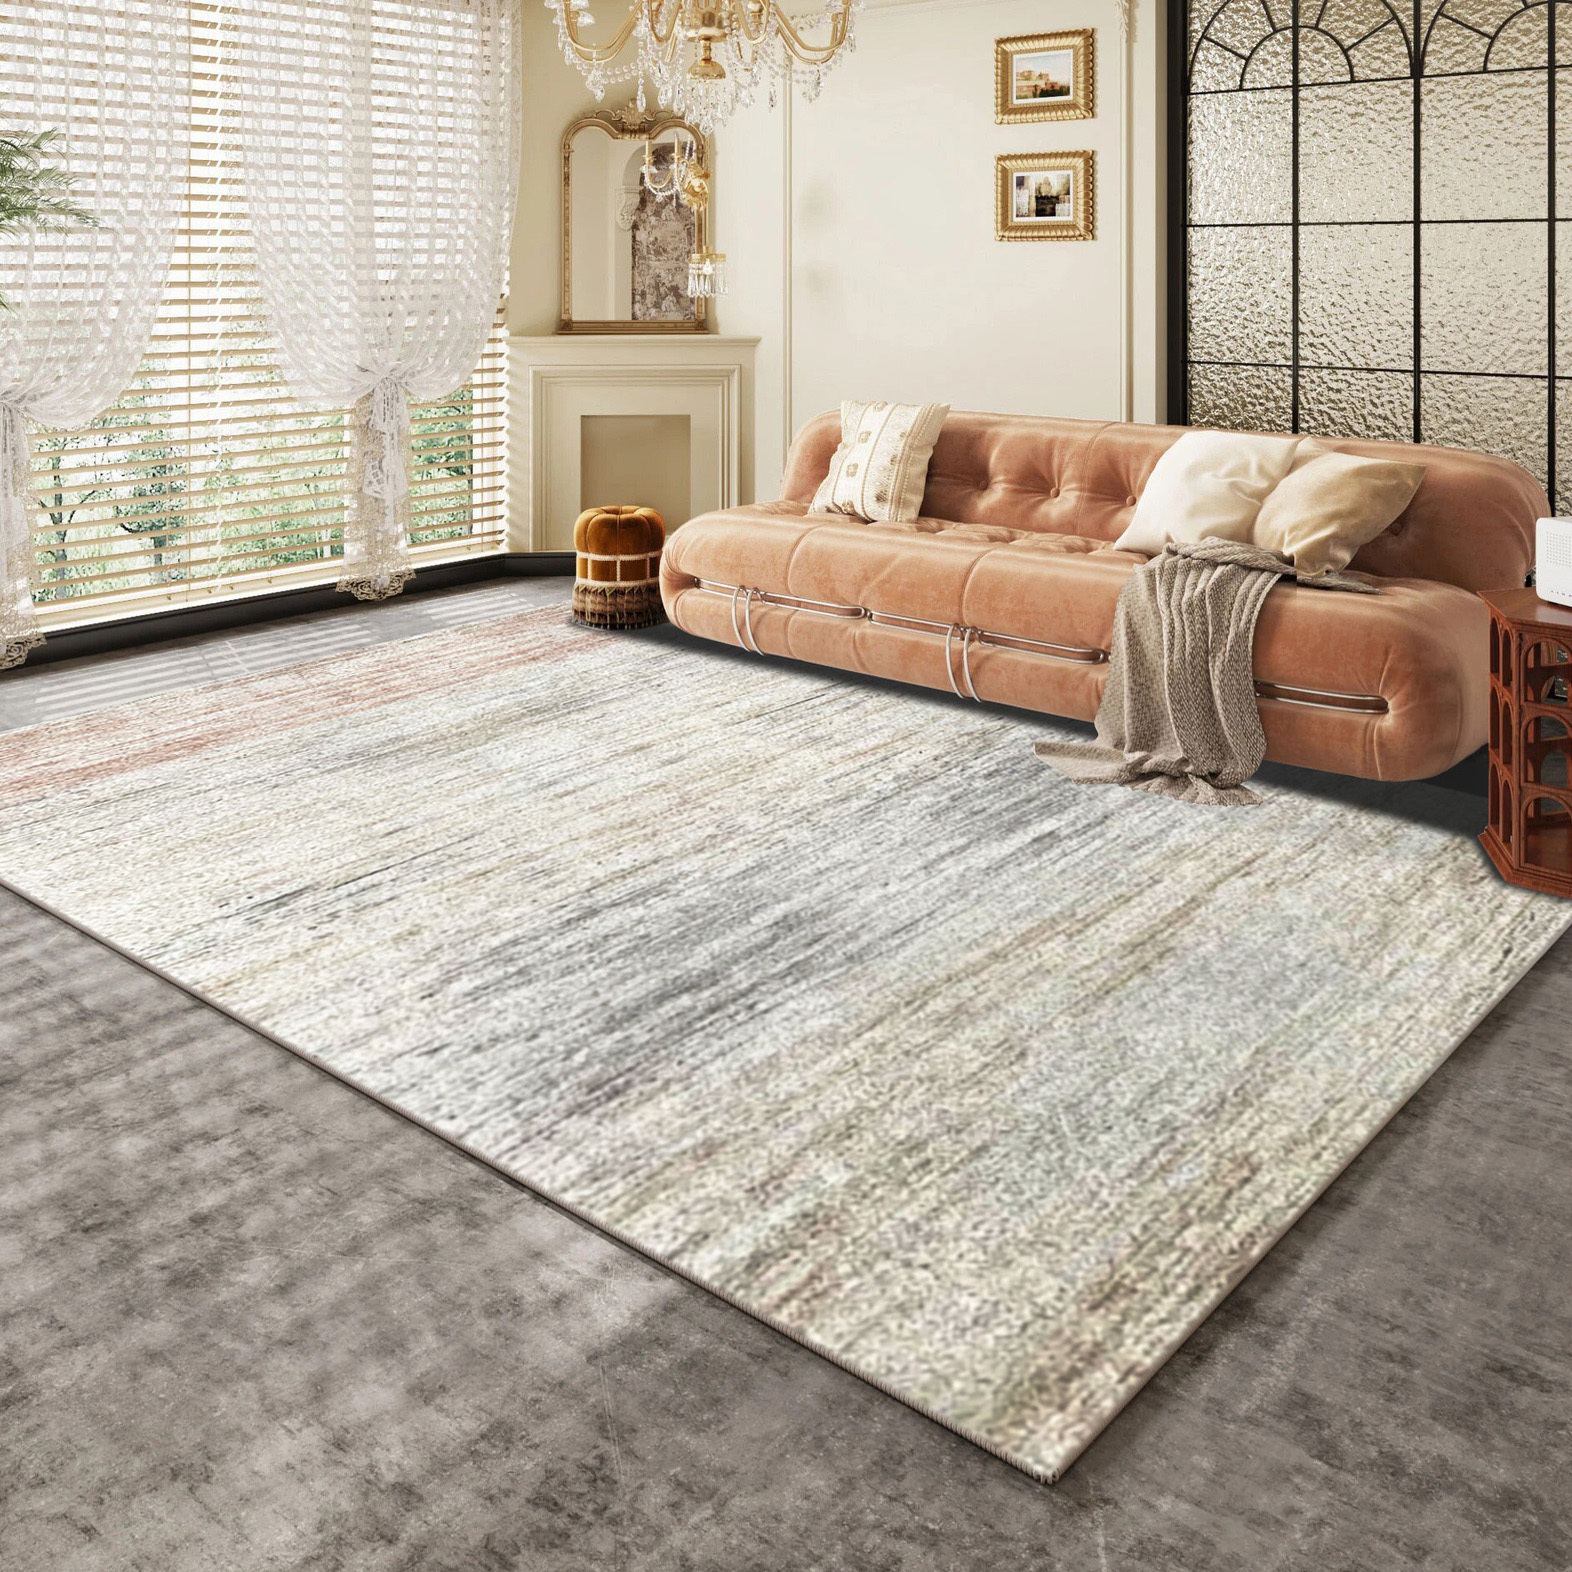 XL Extra Large Lush Plush Misty Carpet Rug (300 x 200)